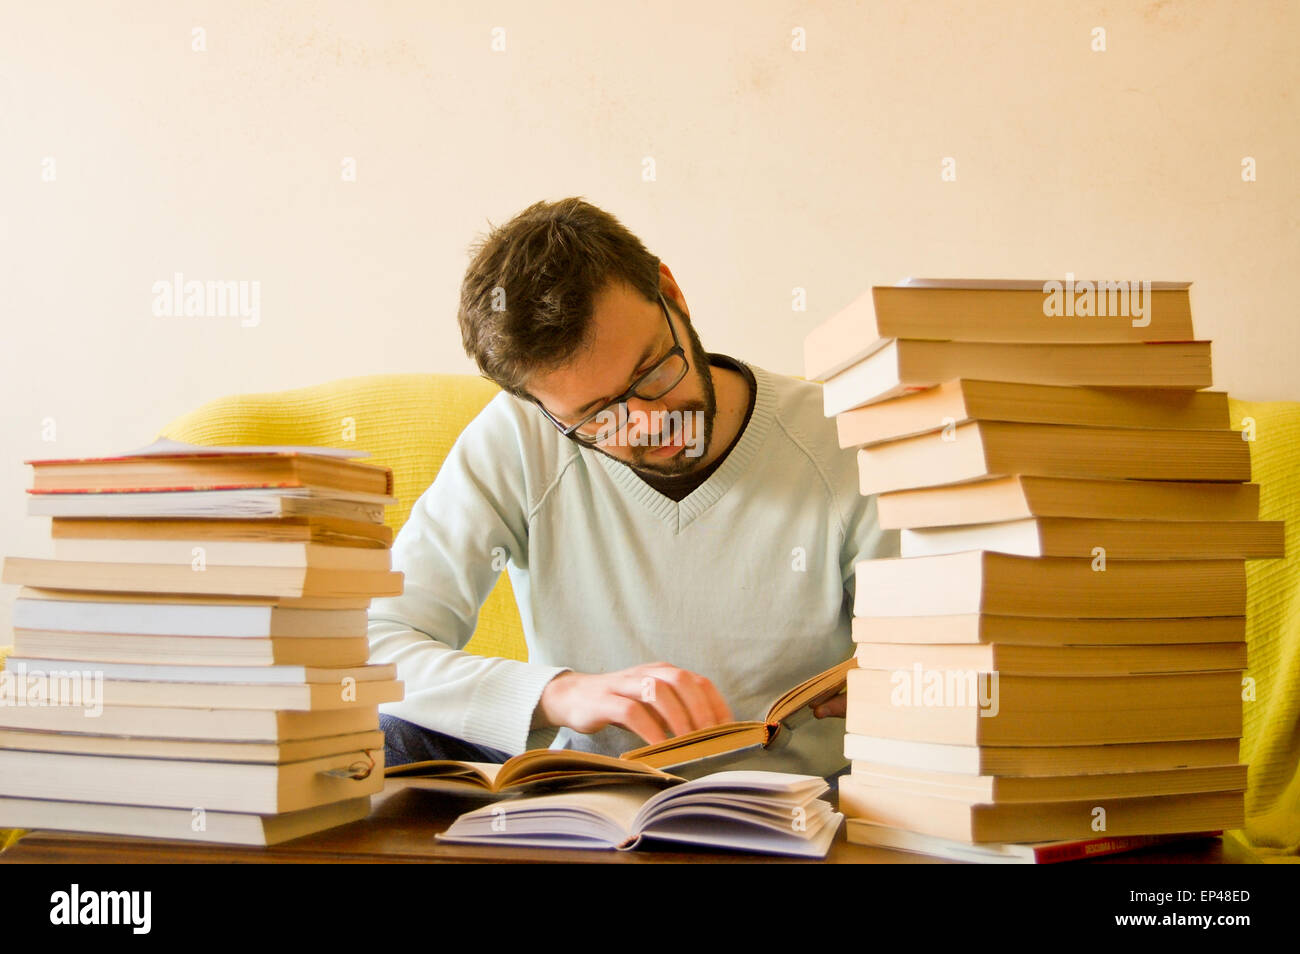 L'étude de l'homme avec une pile de livres en face de lui Banque D'Images